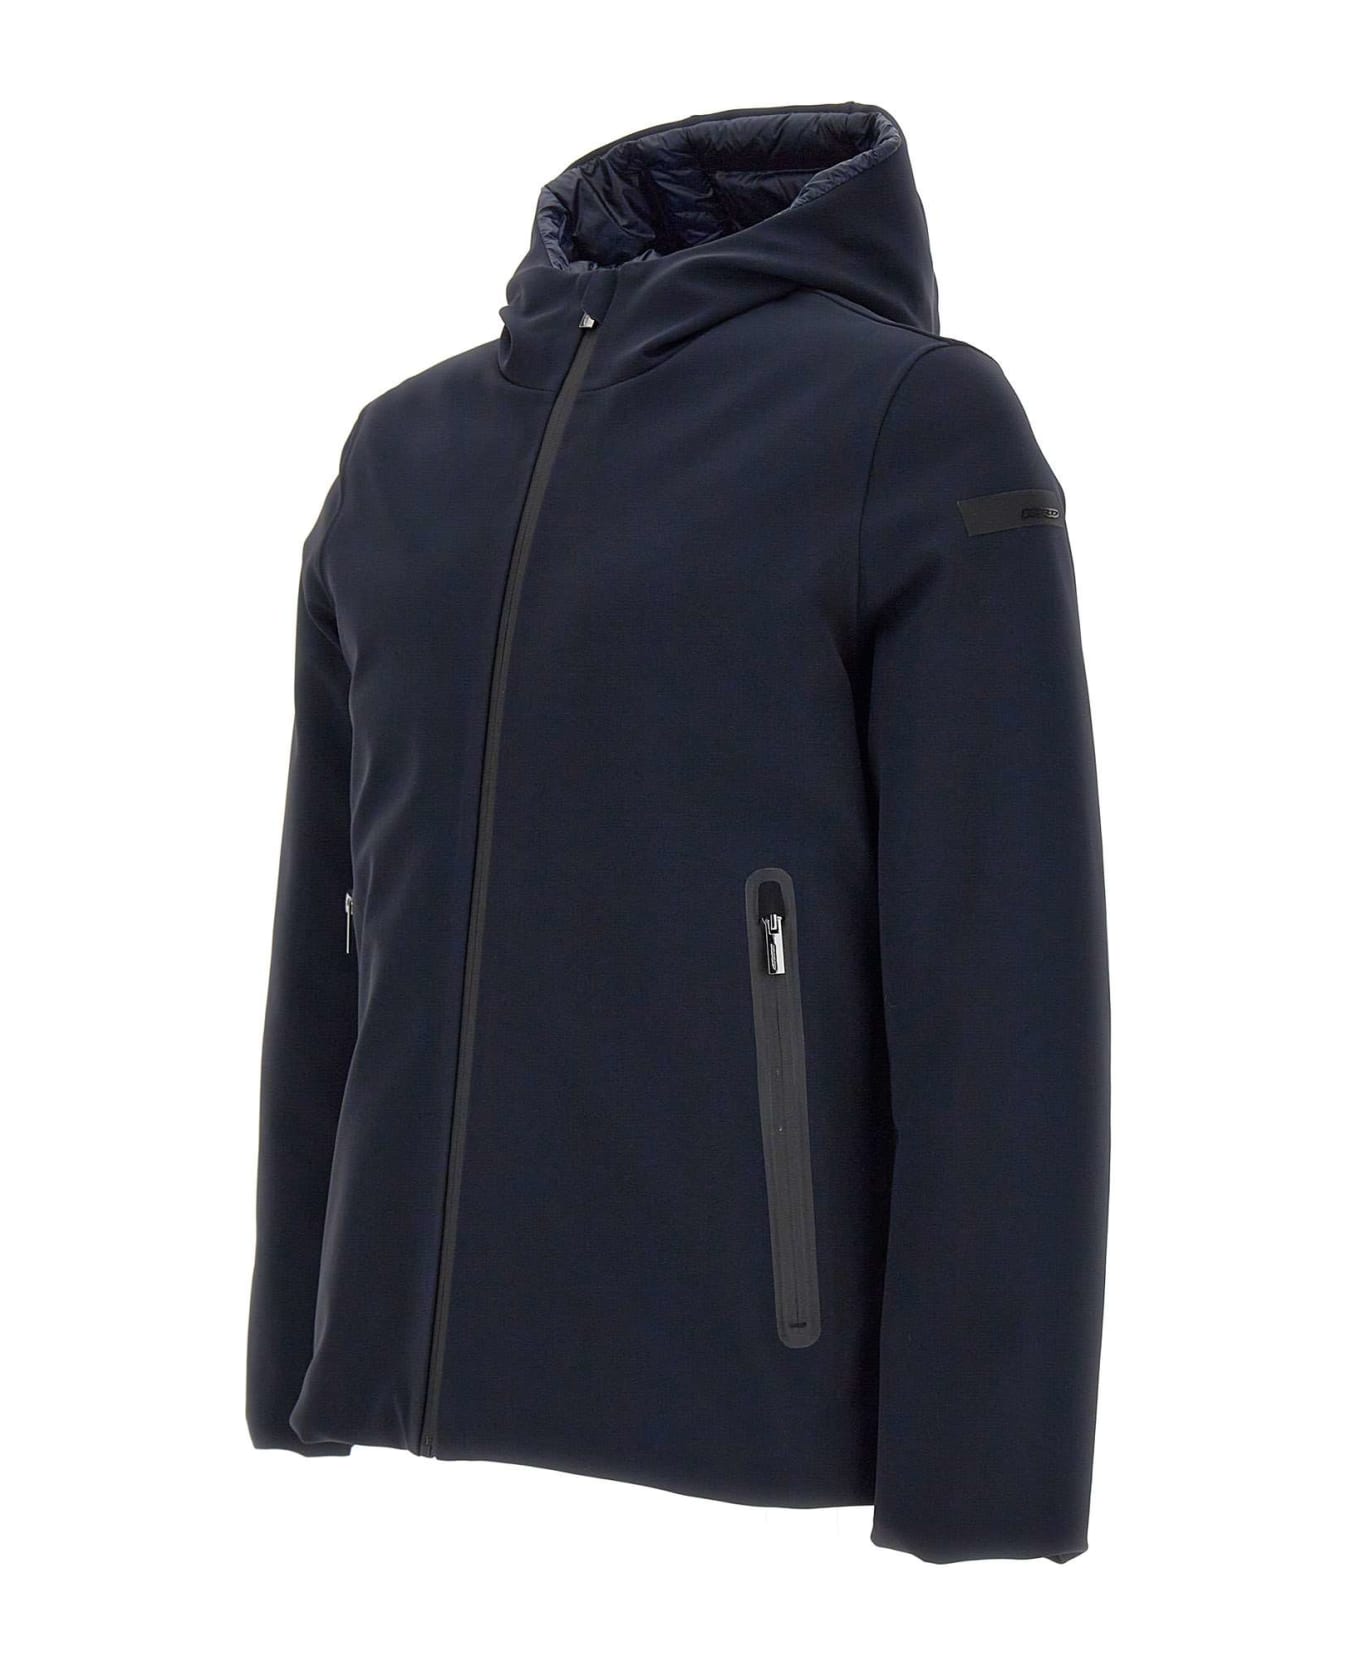 RRD - Roberto Ricci Design 'winter Storm' Jacket